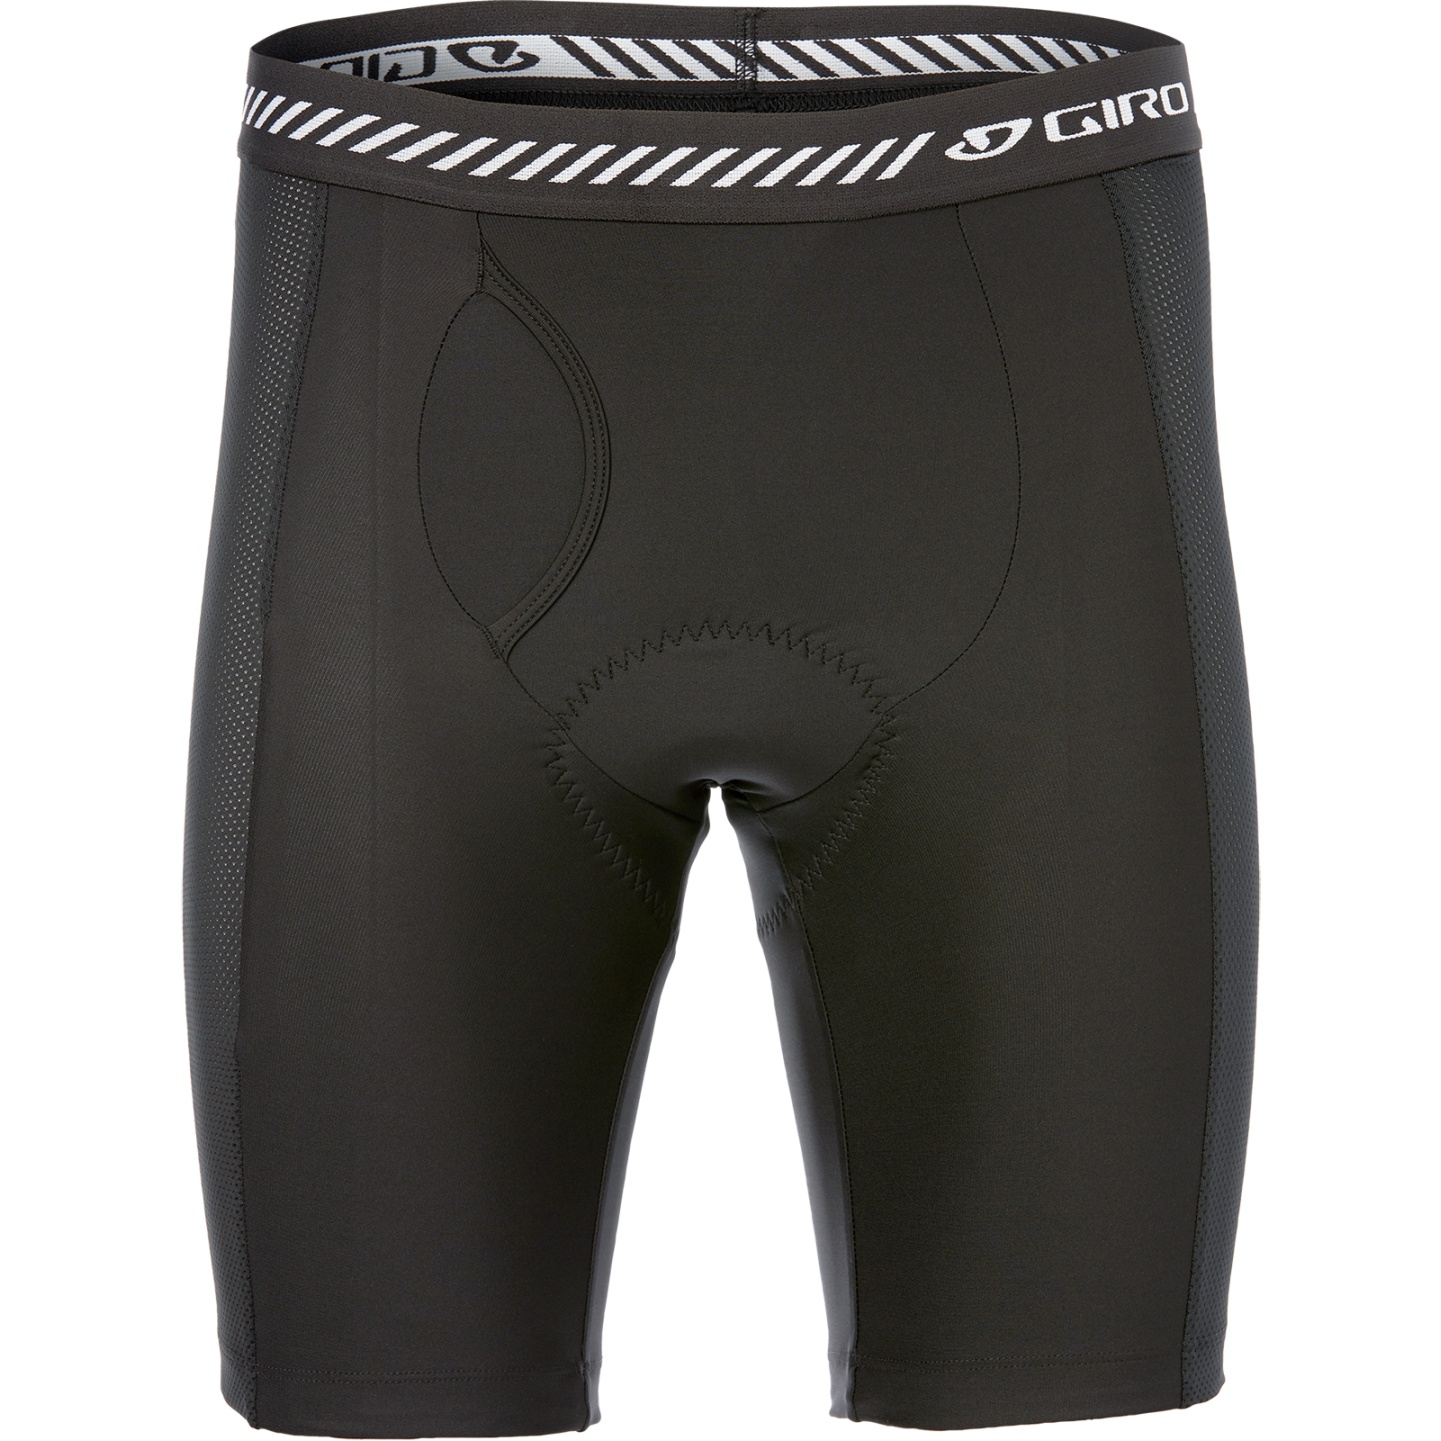 Produktbild von Giro Base Liner Short Unterhose - schwarz